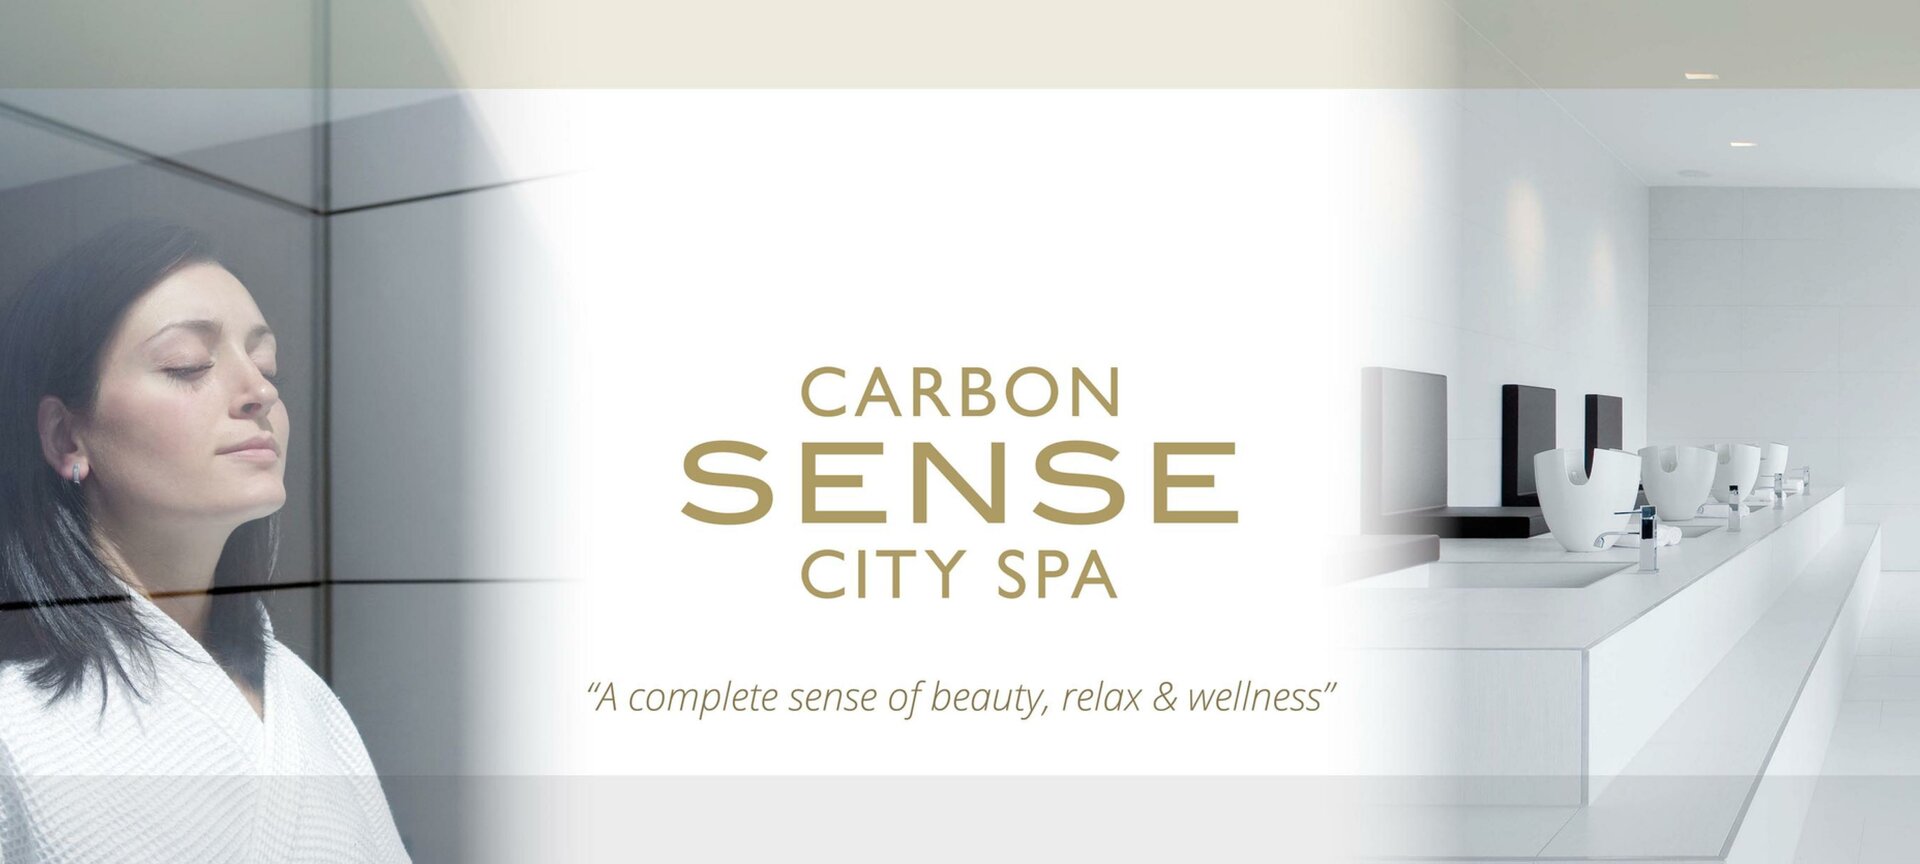 Carbon Sense City Spa - carbon sense 2